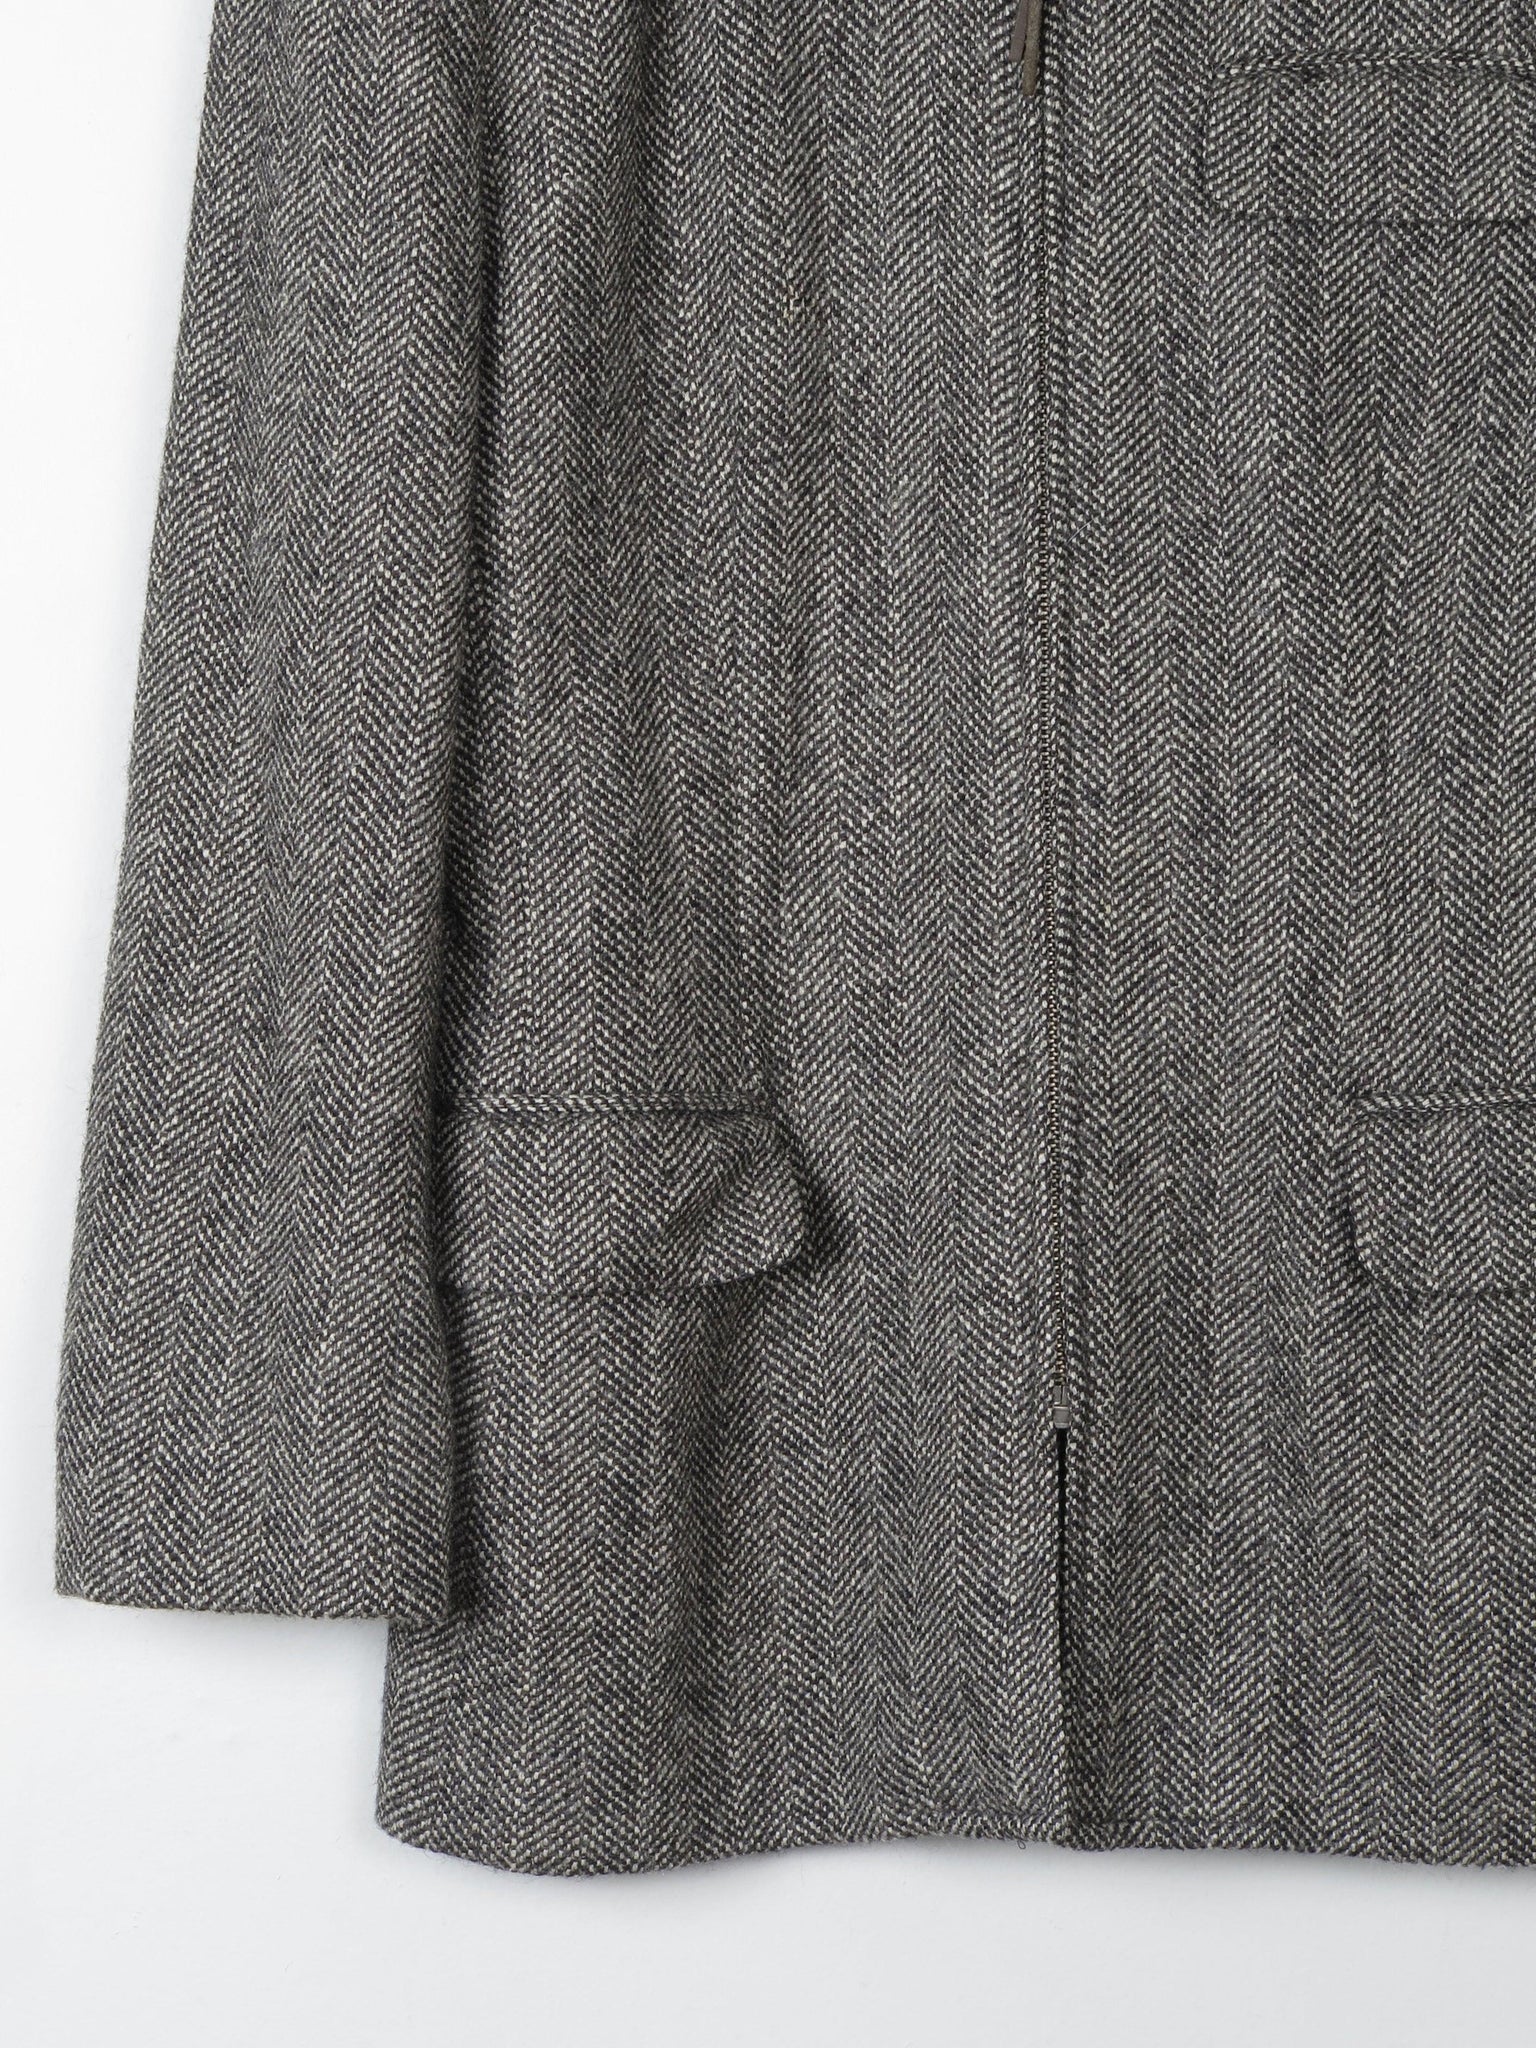 Women's Vintage Tweed Jacket Ralph Lauren 8 - The Harlequin